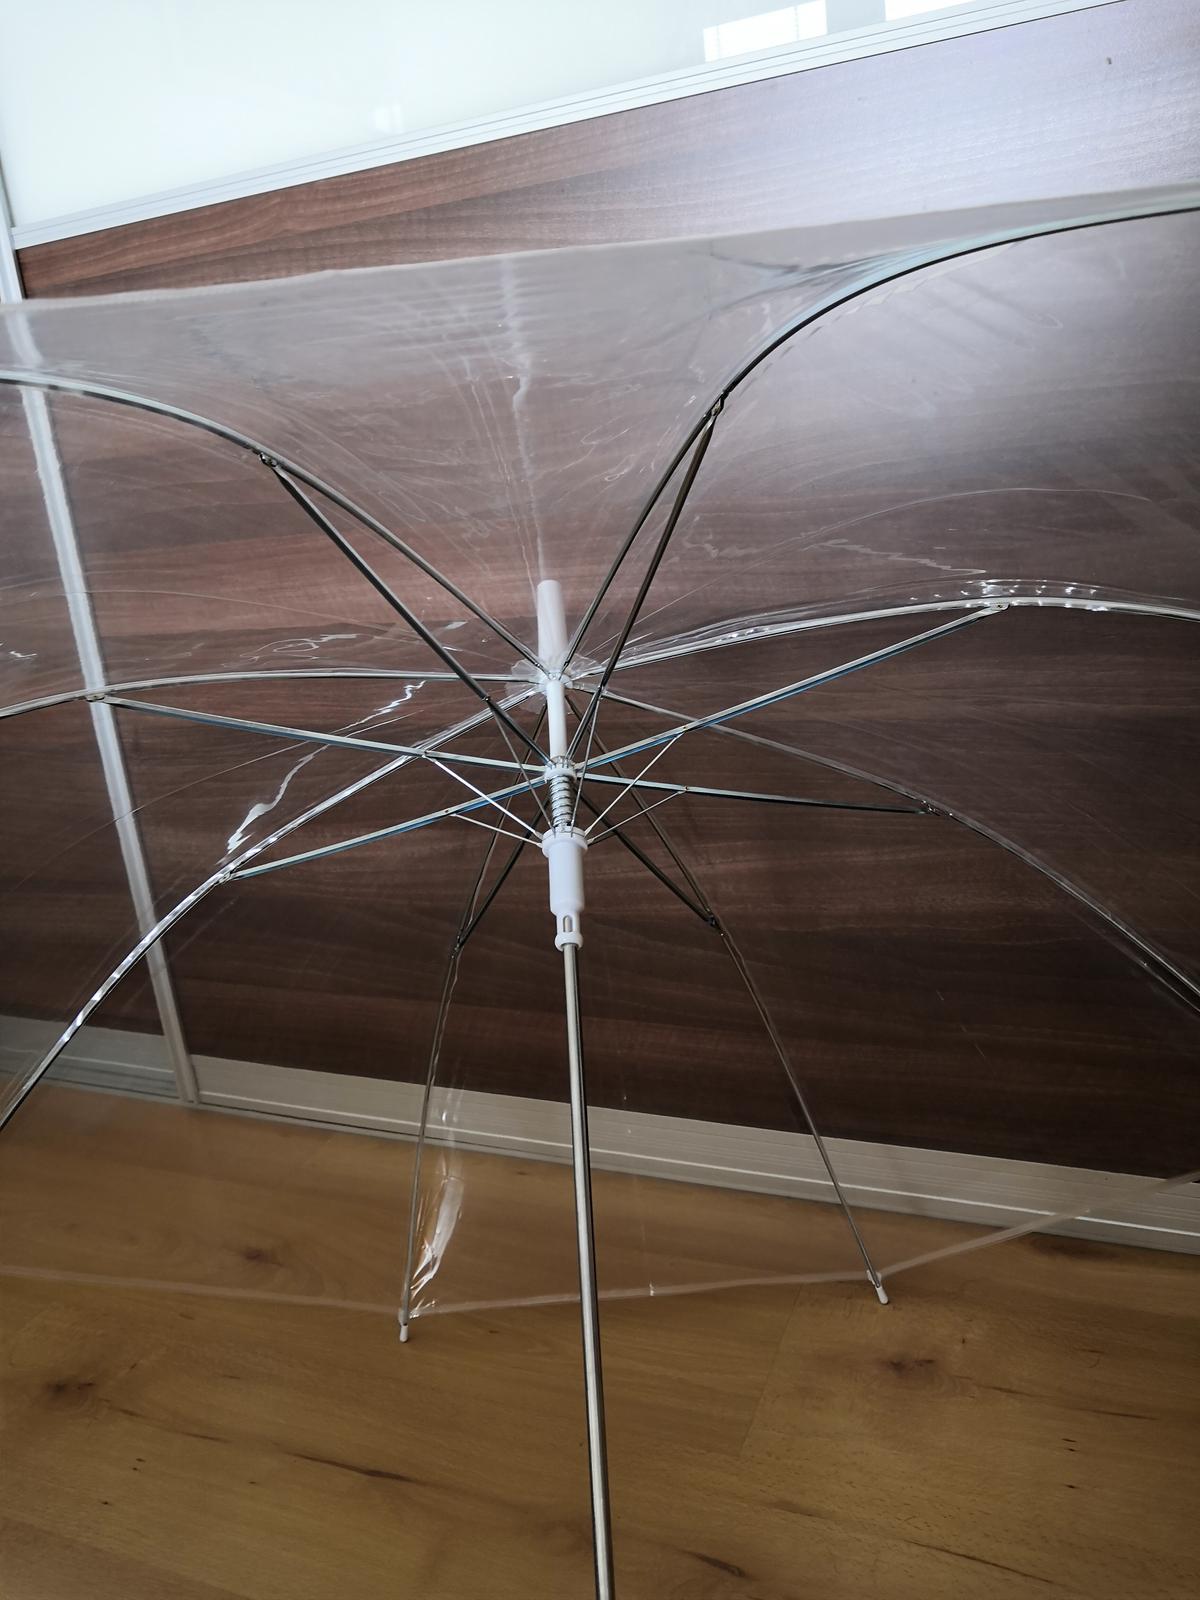 Průhledný deštník - nový, nepoužitý - Obrázek č. 1